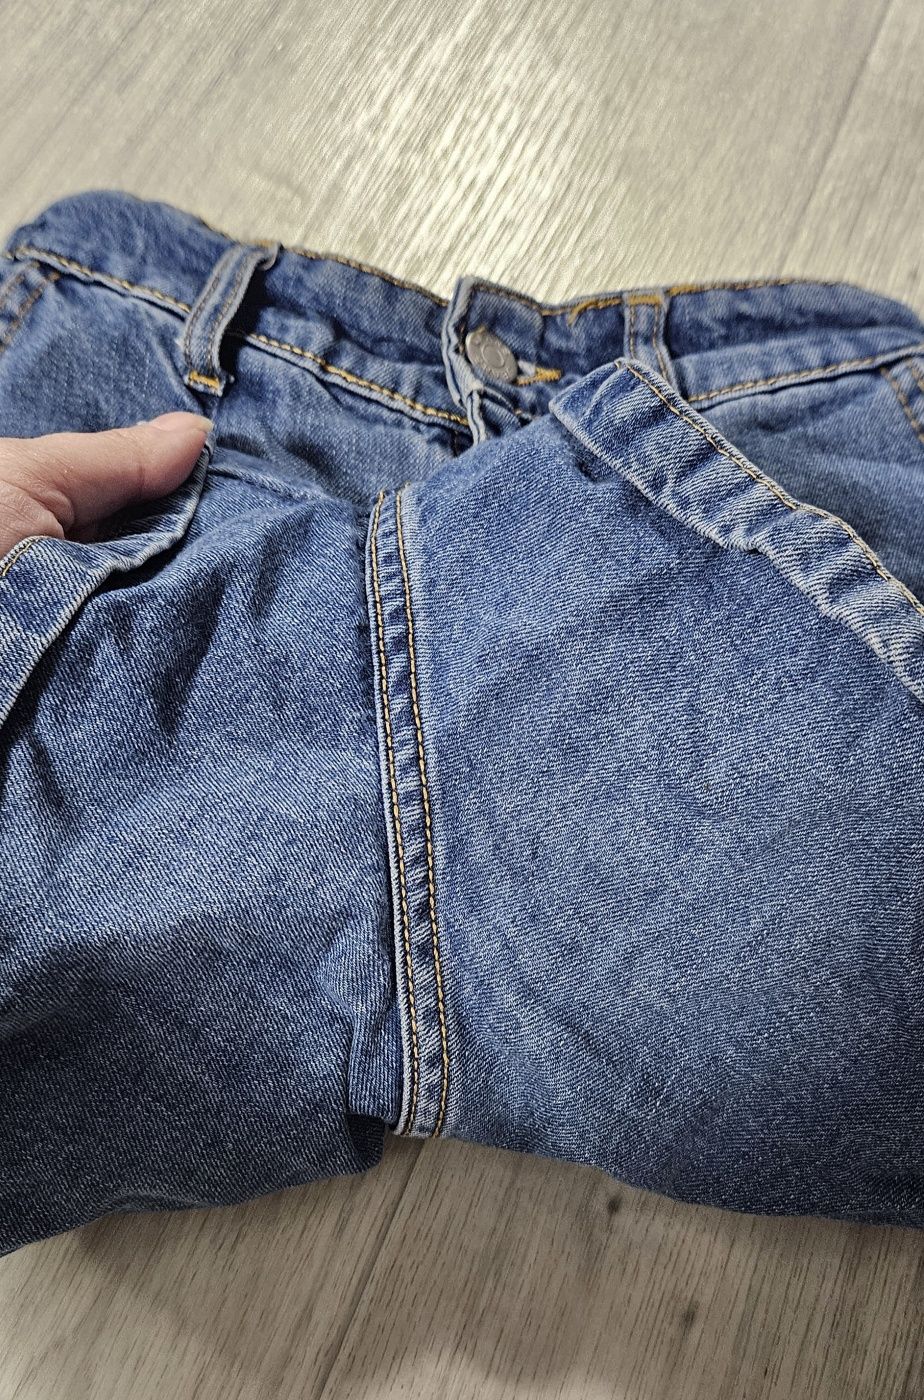 Джинові шорти в стилі зара zara mango джинсовые шорты